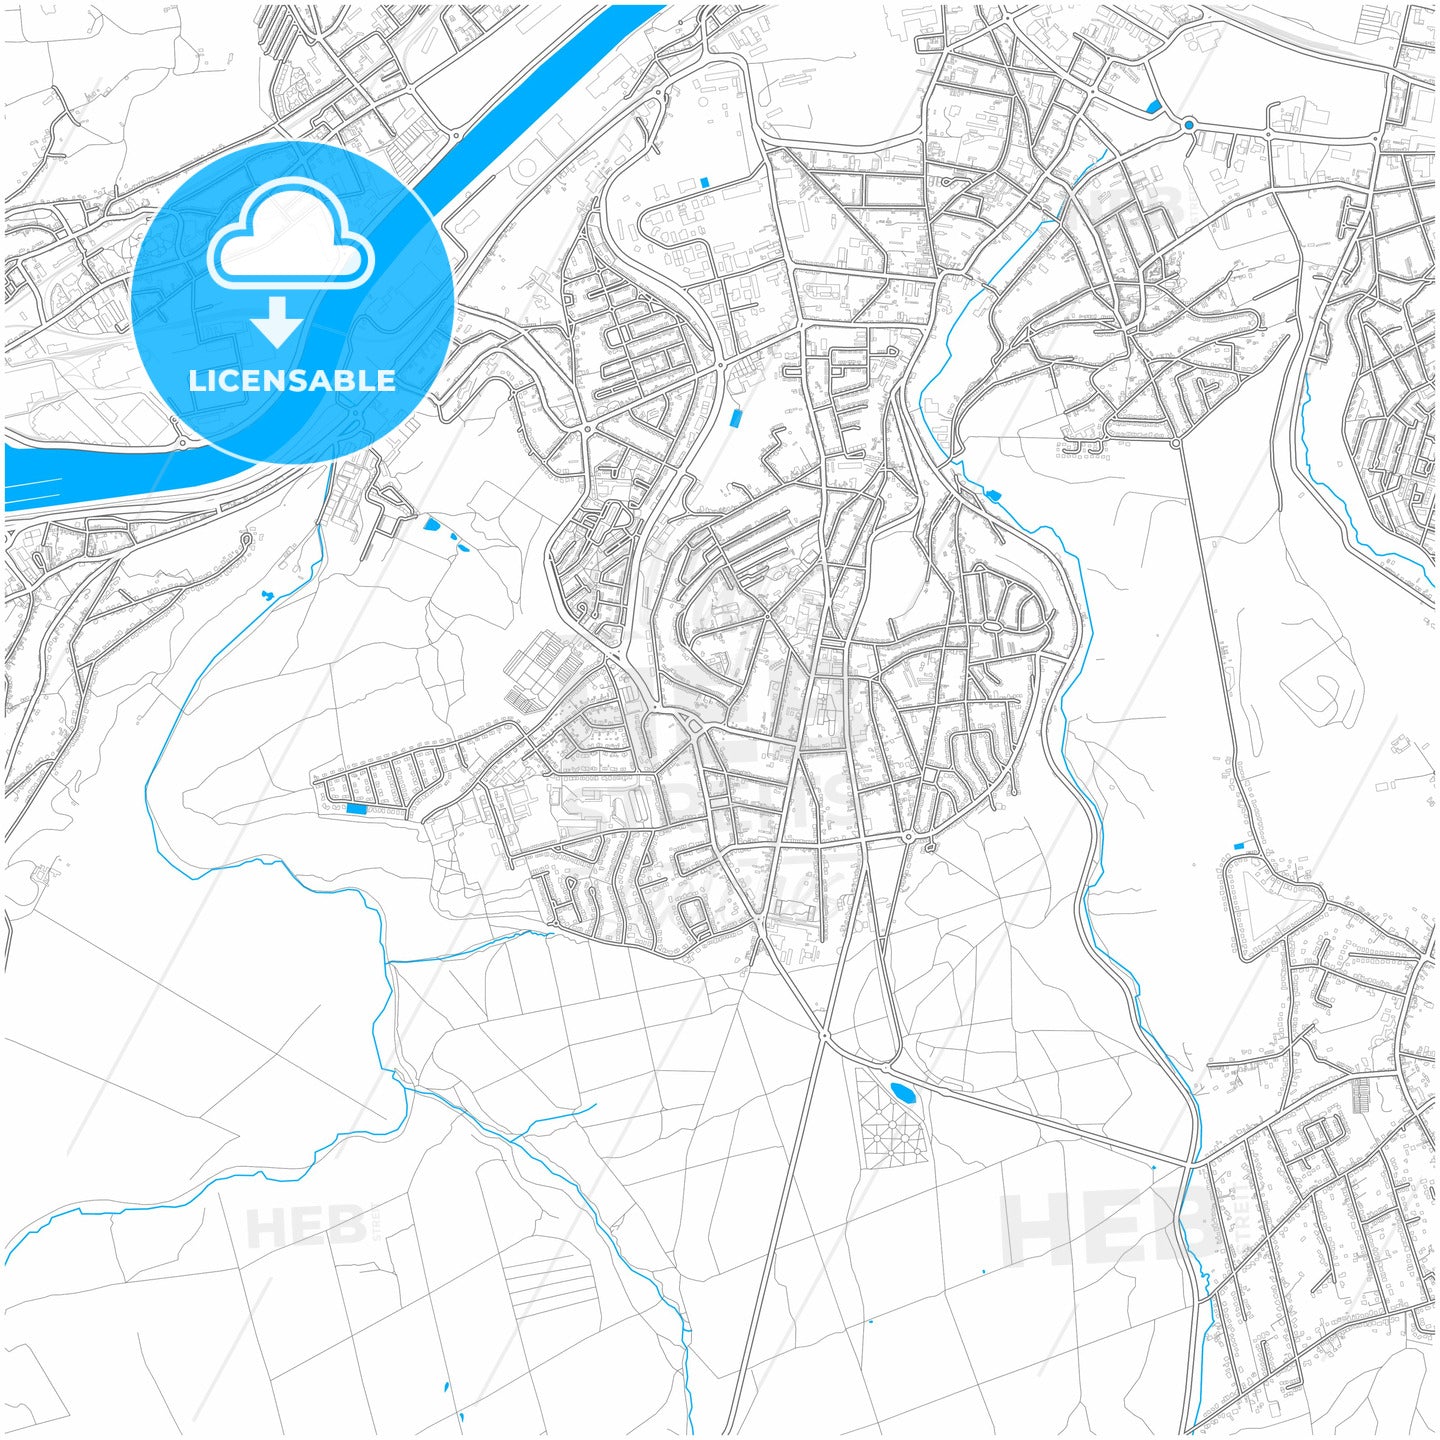 belgium city map